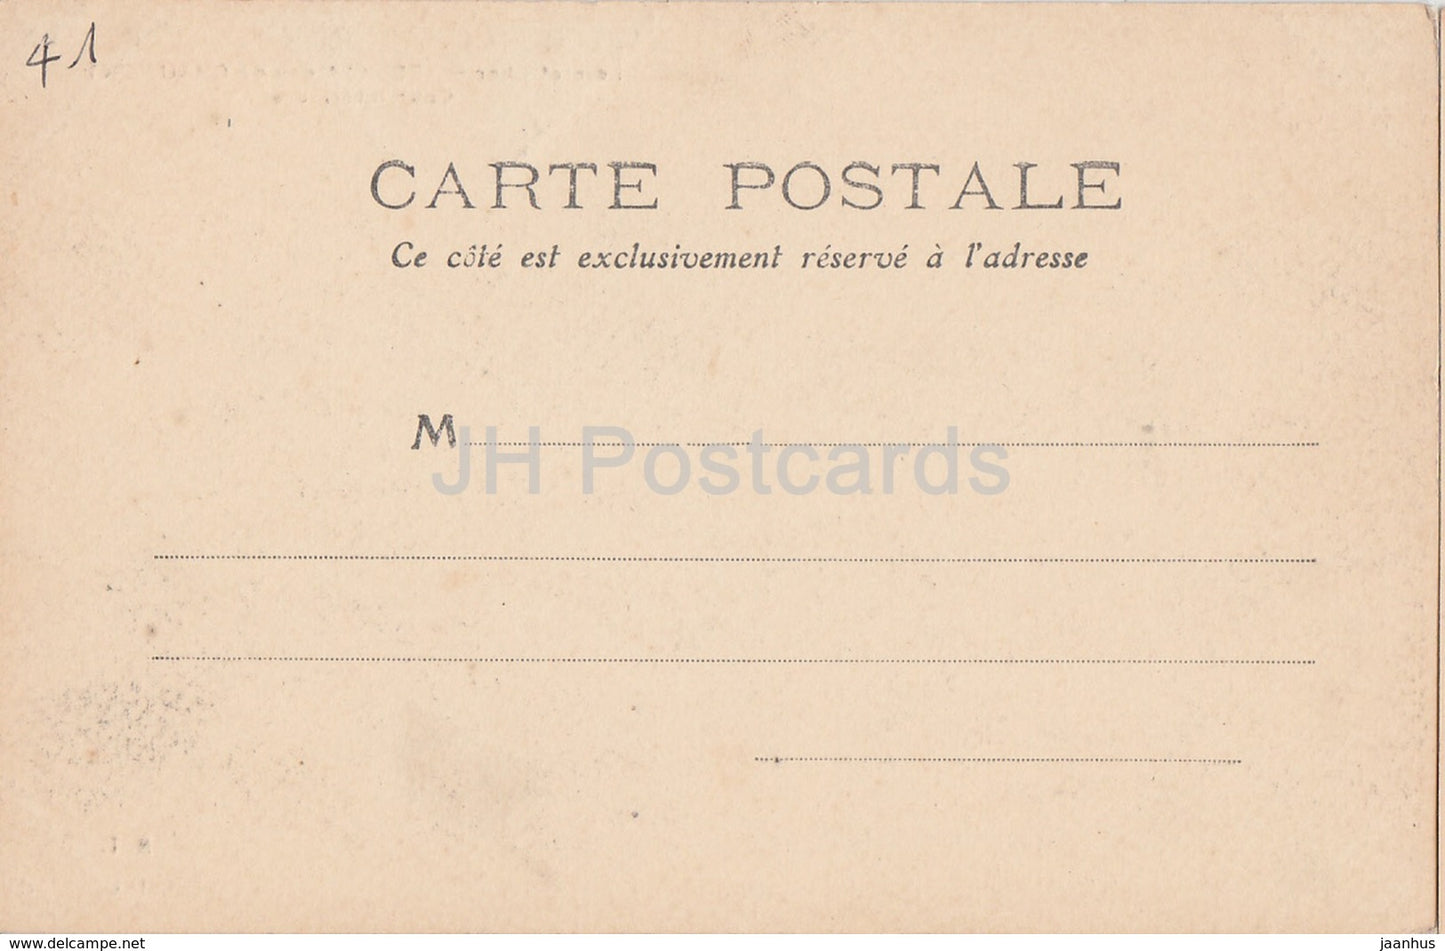 Chateau de Chaumont - Loir et Cher - Cour interieure - 135 - castle - old postcard - France - unused